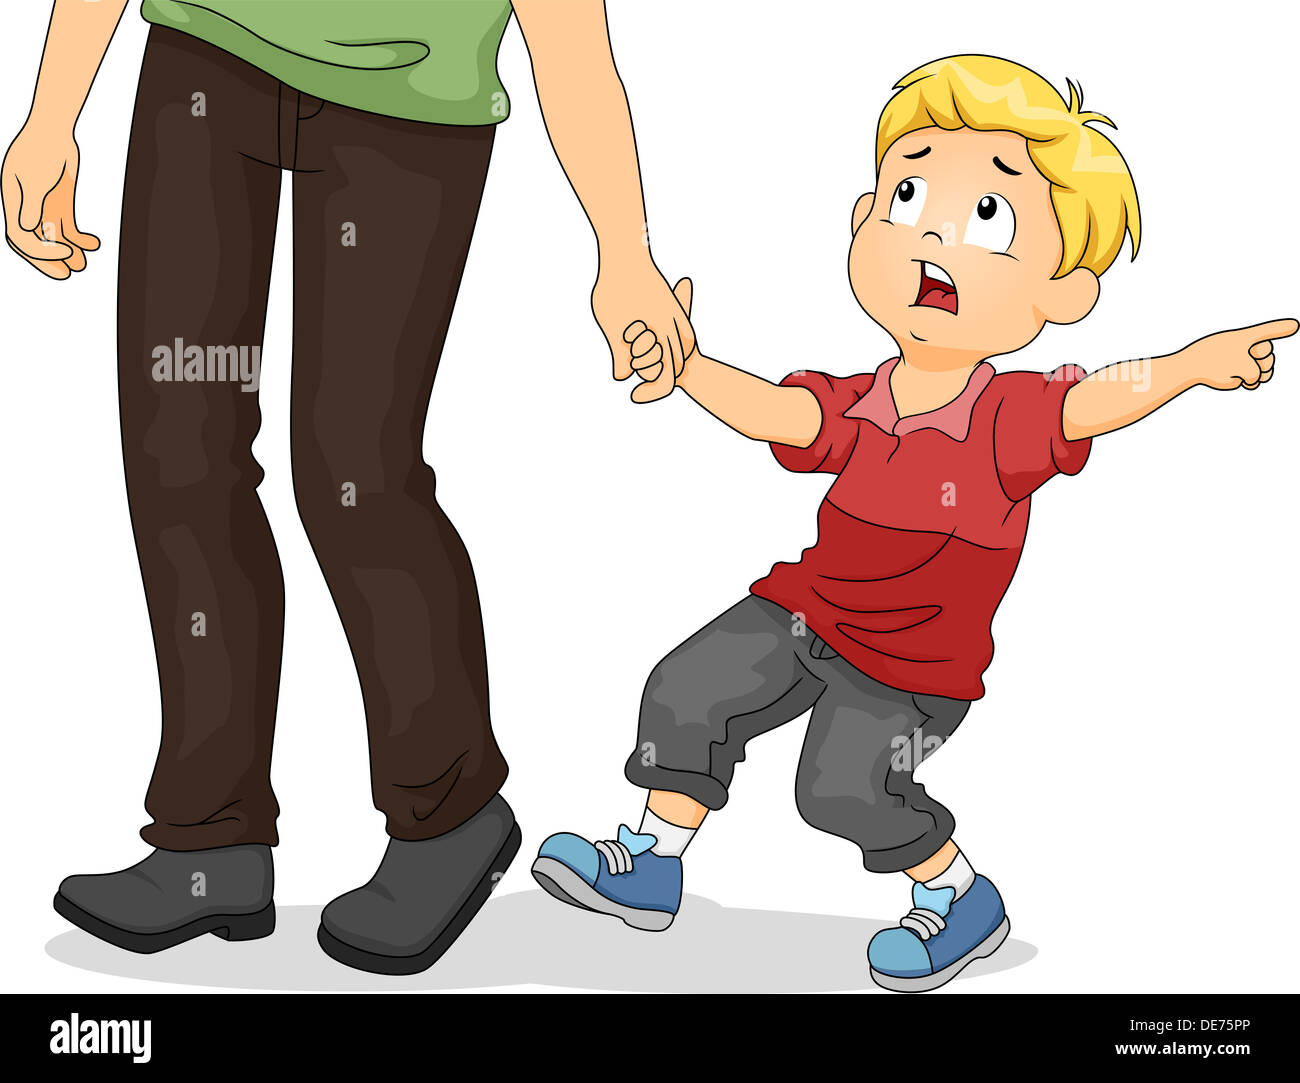 Ребенок тащит папу и кричит мама